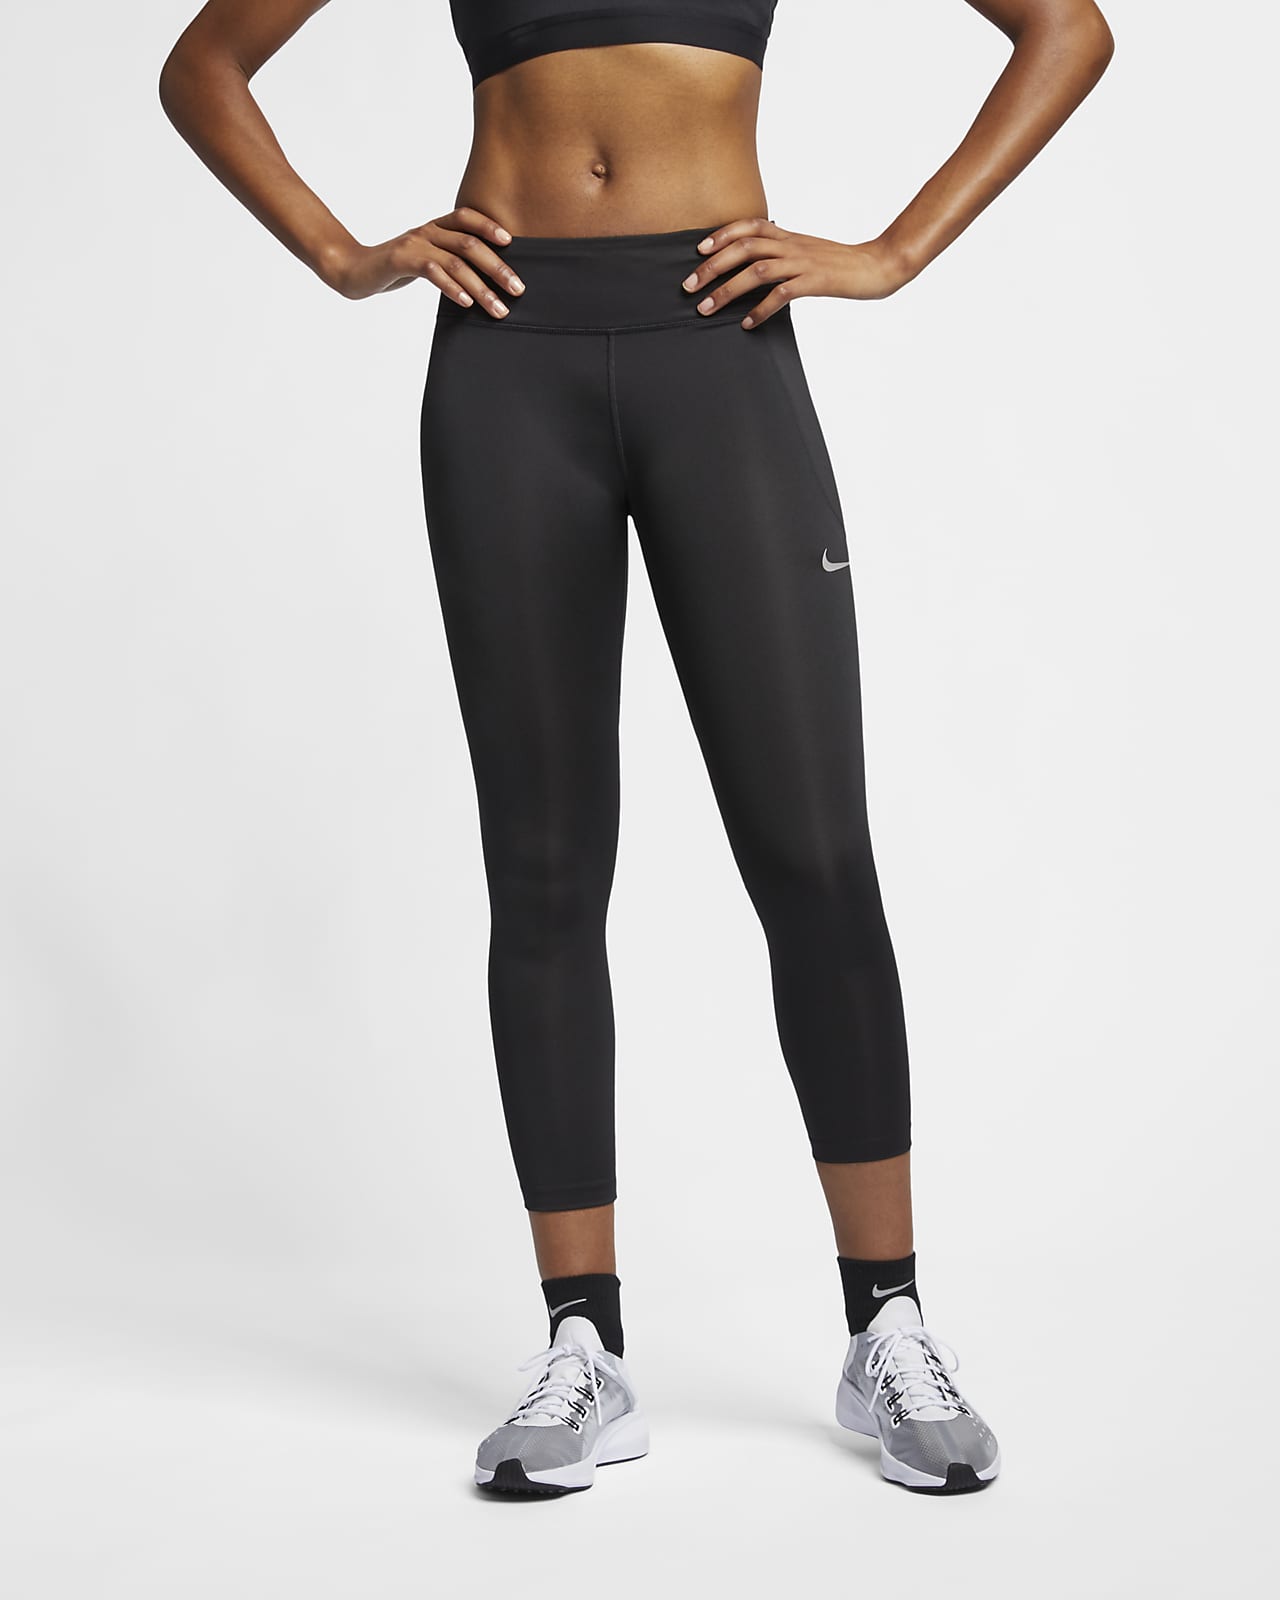 Nike Fast Women's Crop Running Leggings. UK